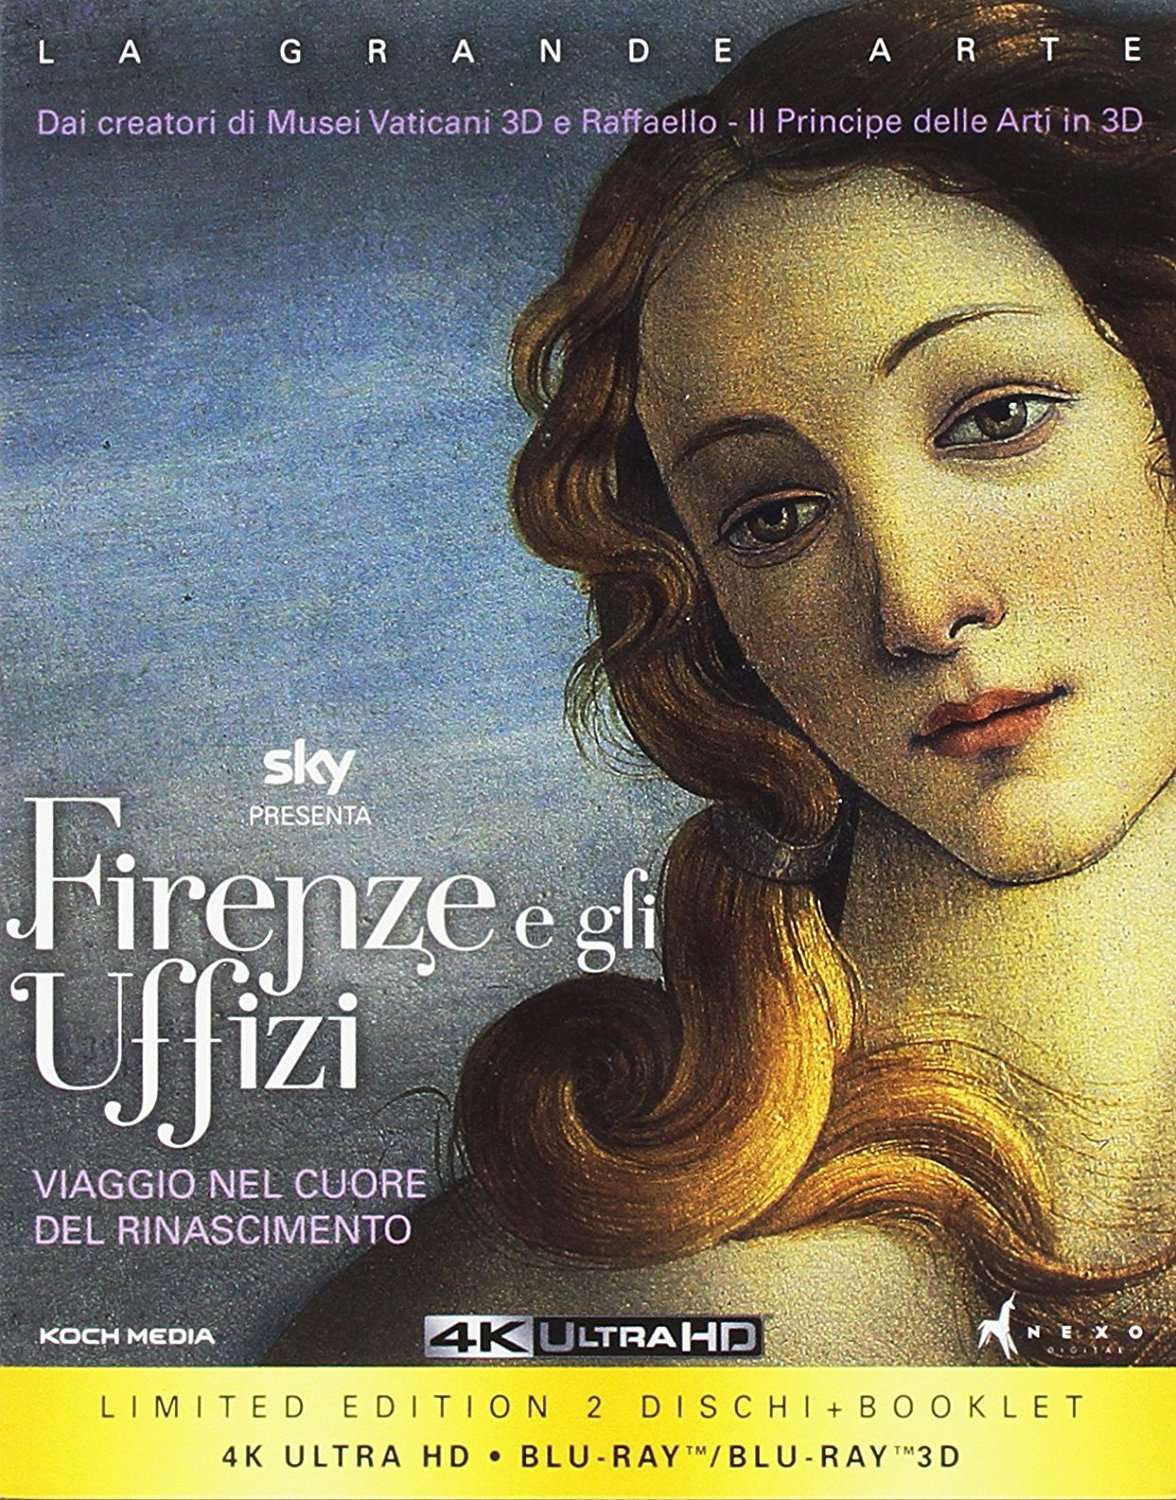 佛罗伦萨与乌菲兹美术馆 *2D+3D* 年度噱头之一 Florence.and.the.Uffizi.Gallery.2015.1080p.3D.Blu-ray.AVC.DTS-HD.MA.5.1-CrsS    [40.64 GB ]-1.jpg